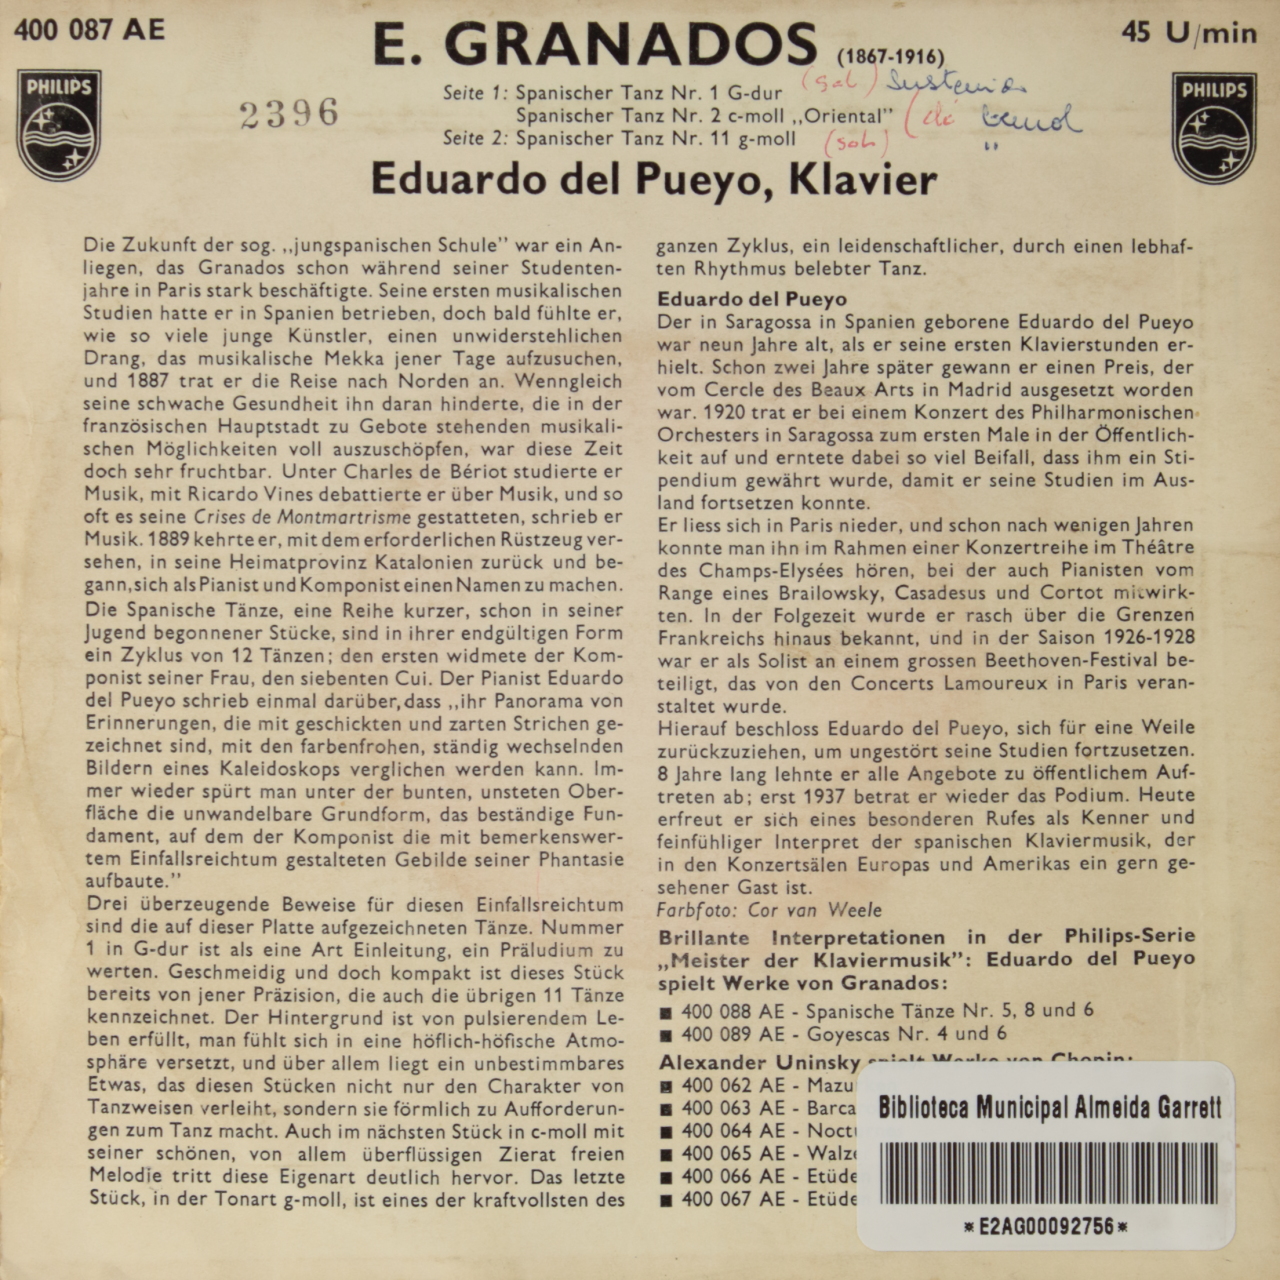 Granados: Spanischer tänze Nr. 1, 2 (Oriental), 11